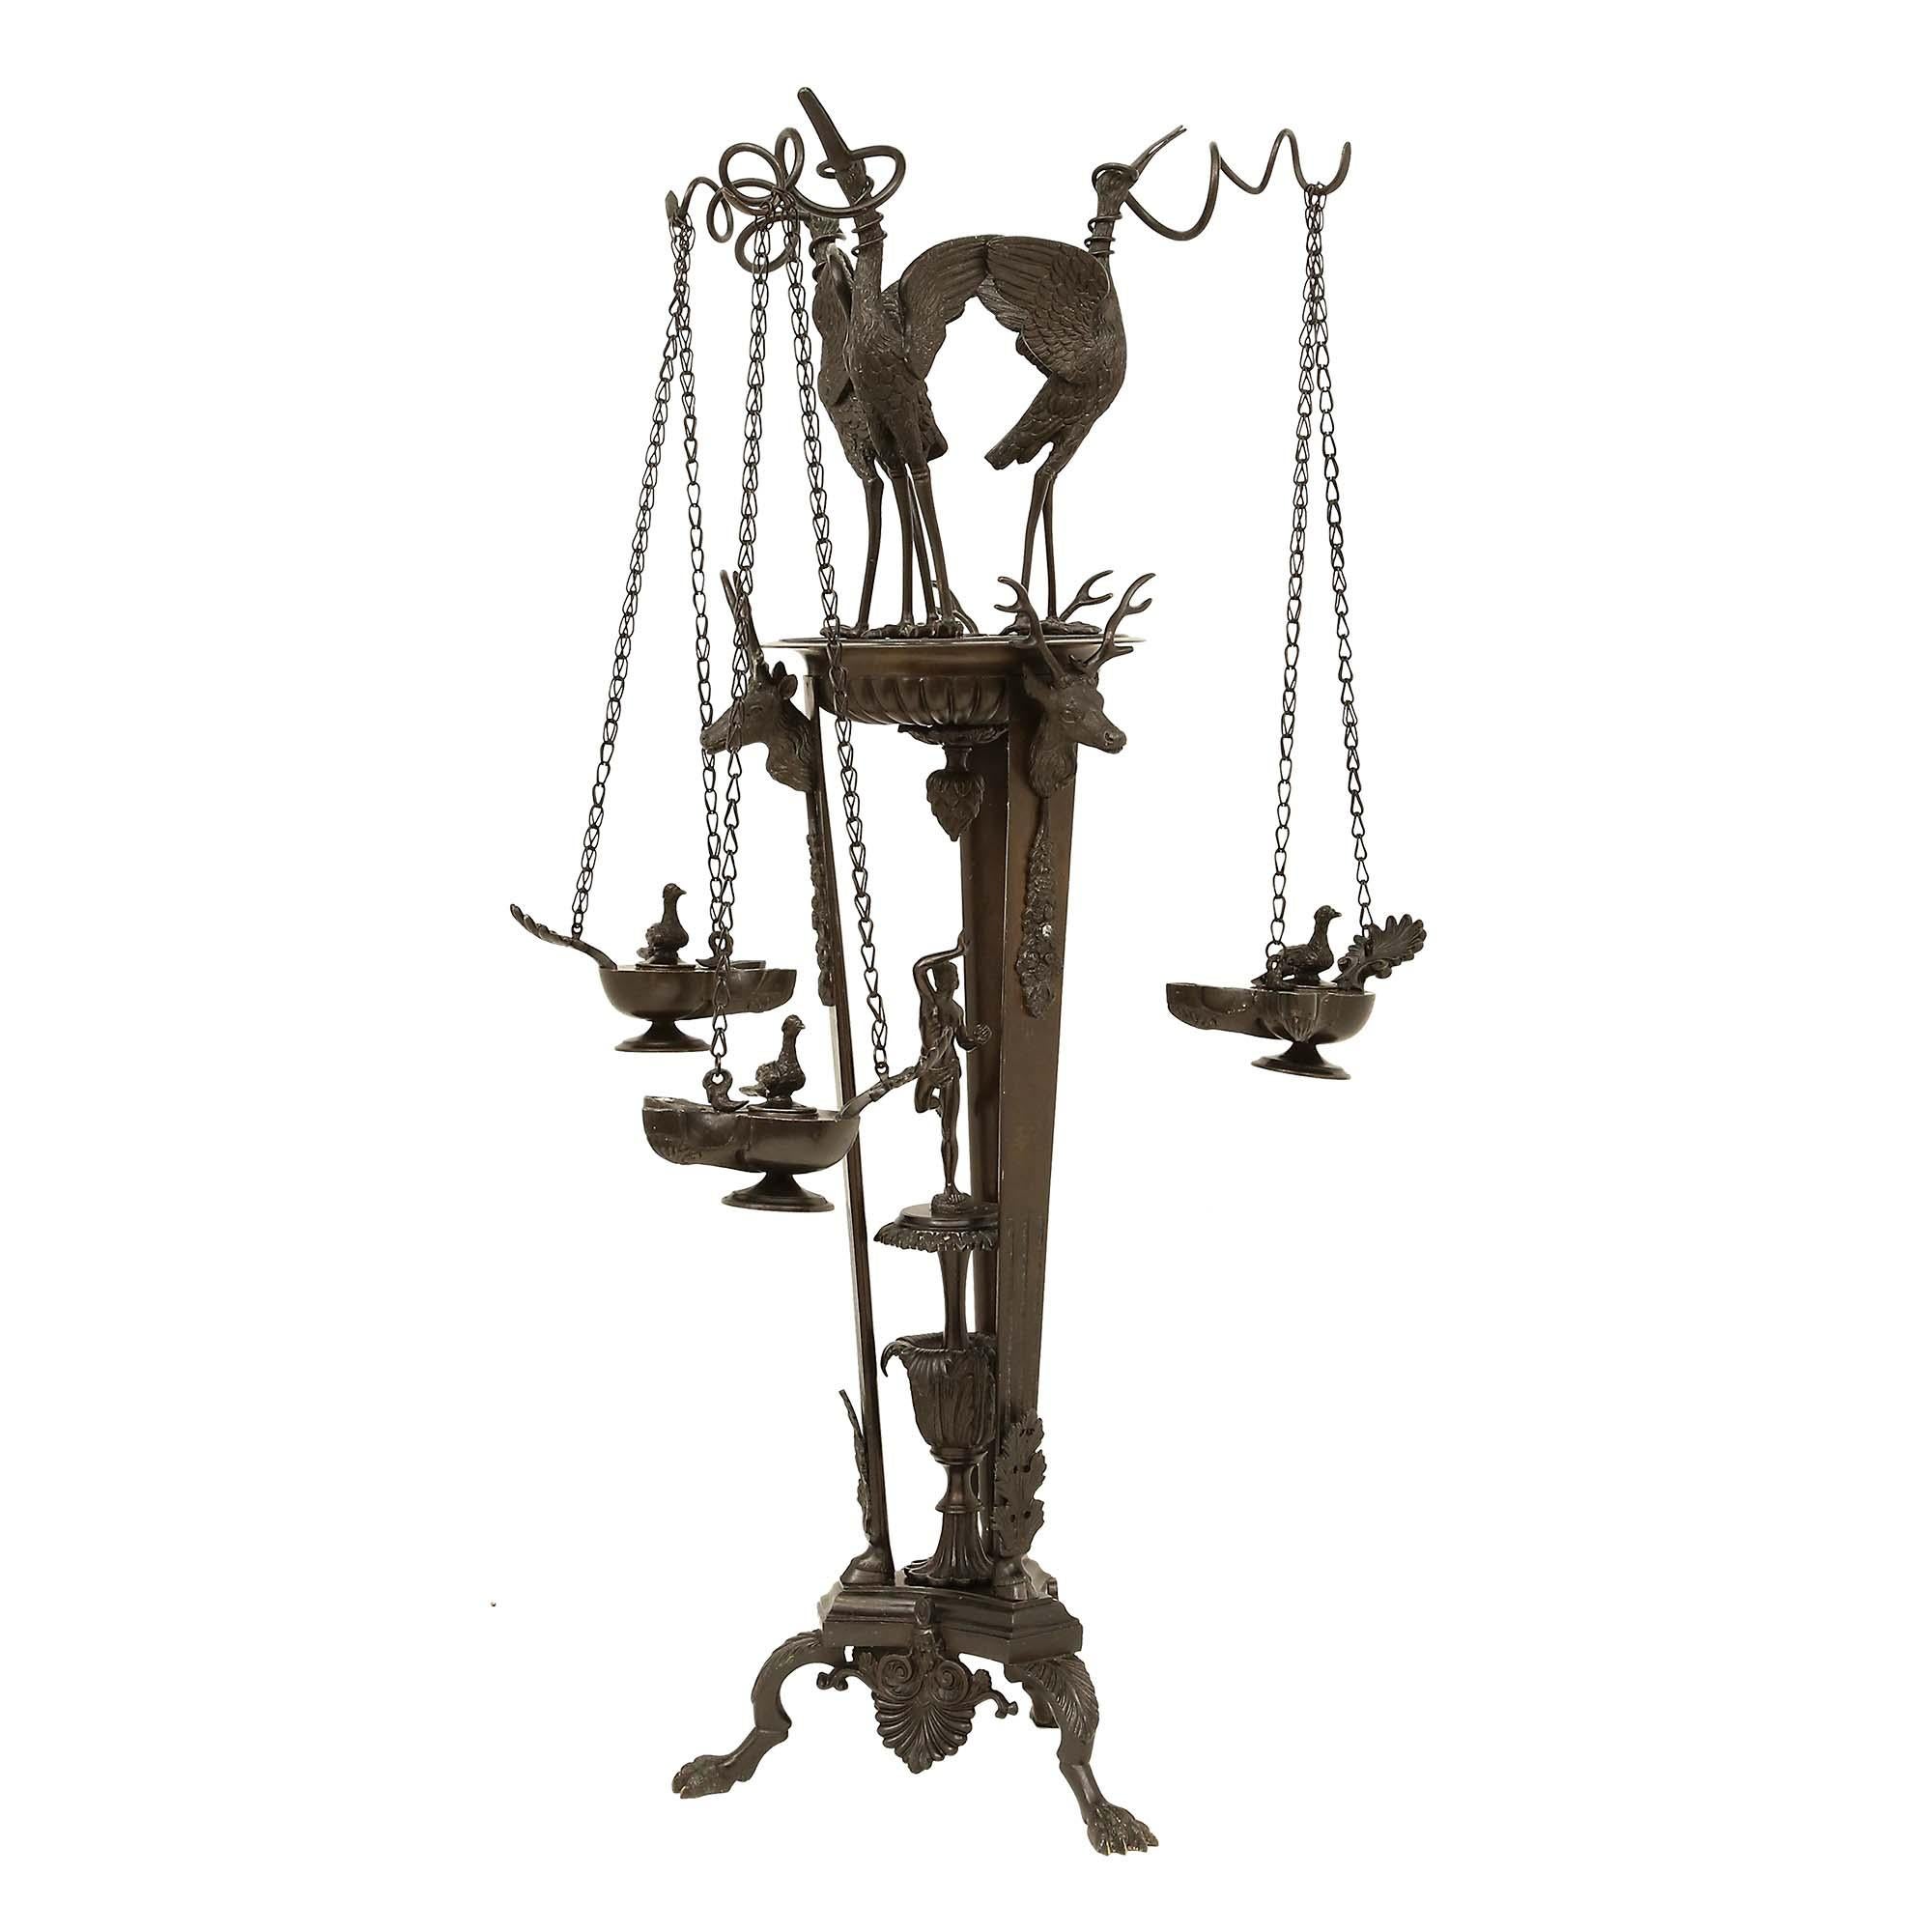 Eine äußerst dekorative französische Öllampe aus der Renaissance des 19. Jahrhunderts aus patinierter Bronze auf einem Ständer. Der Ständer hat einen dreibeinigen Sockel mit Palmetten und konkaven Seiten, in dessen Mitte eine Urne mit einer